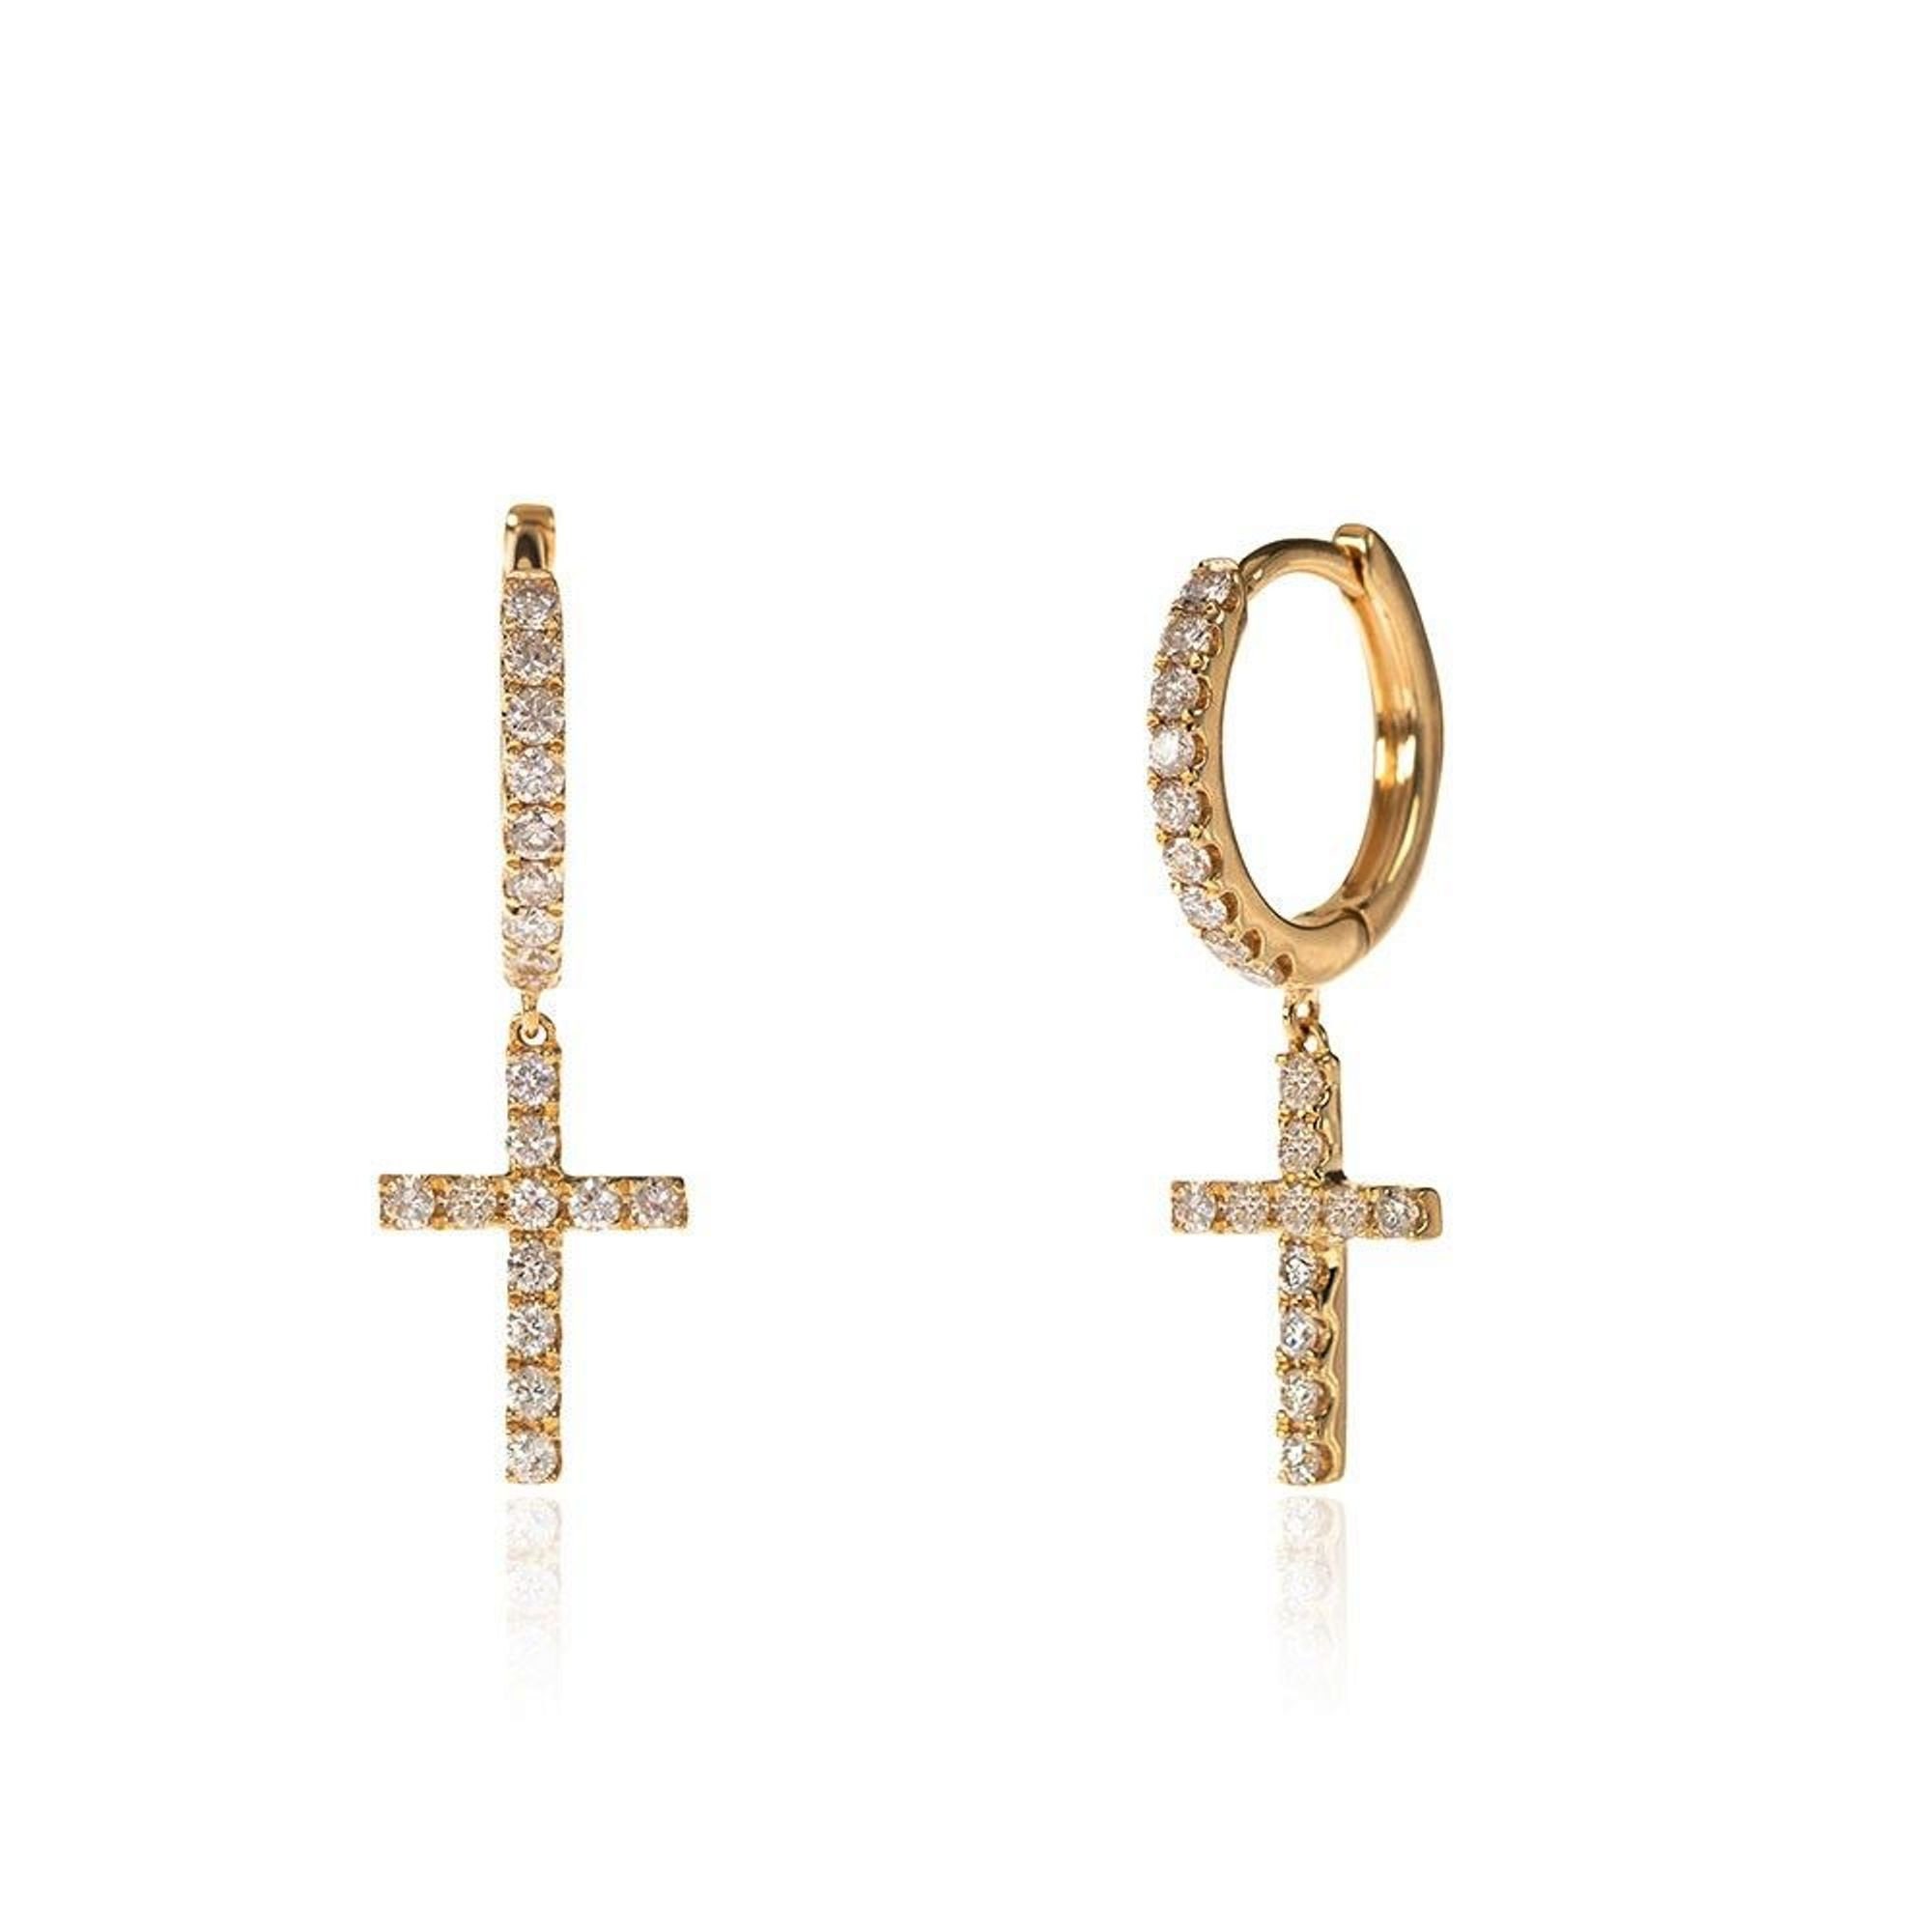 Diamond cross earrings 18K gold earrings diamond earrings | Etsy